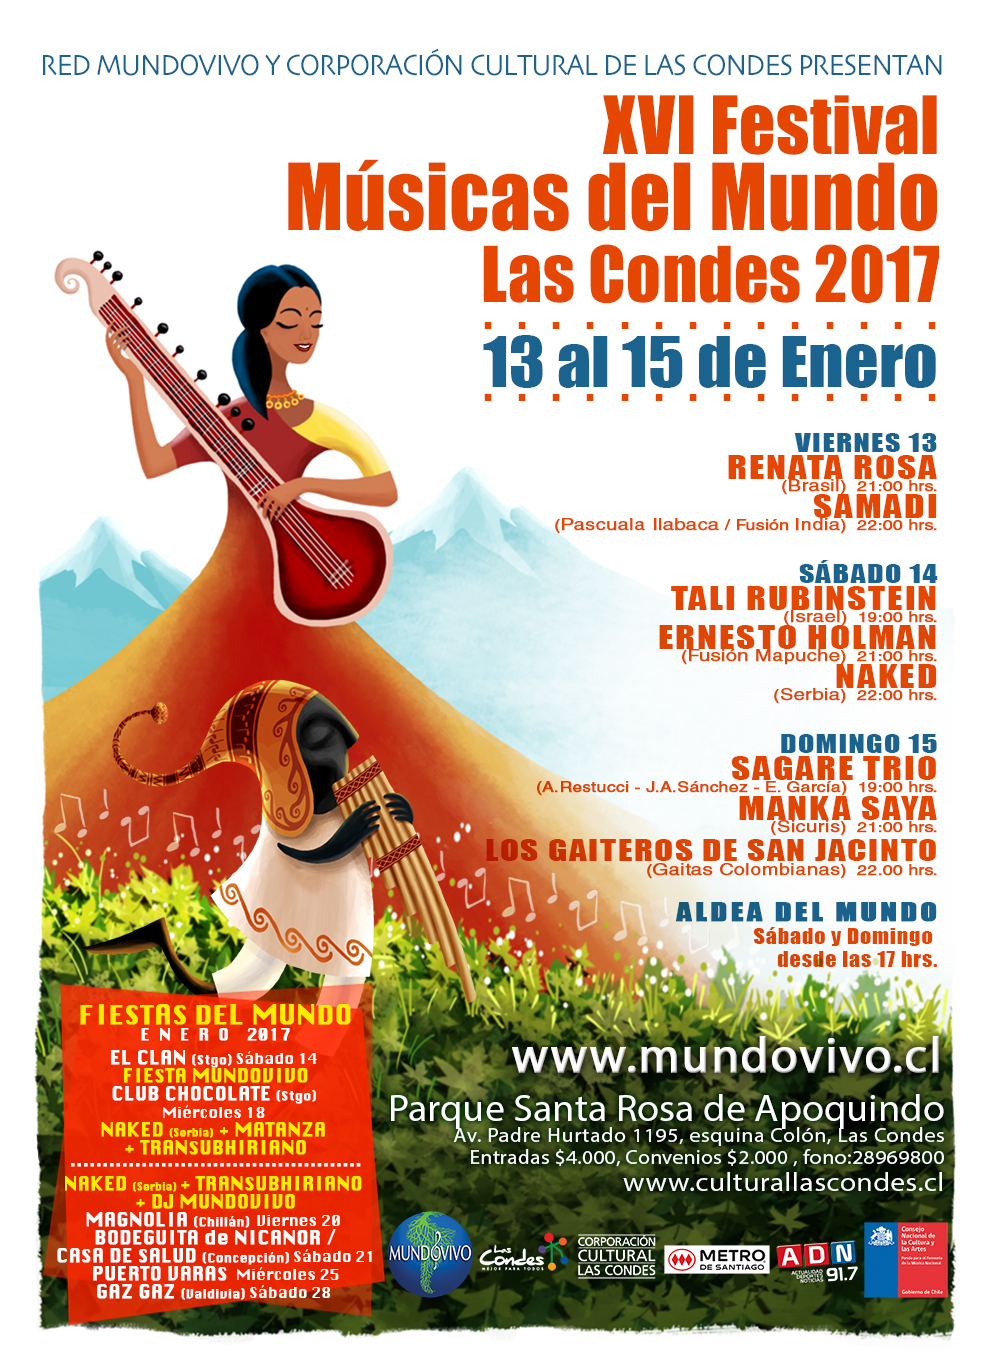 XVI Festival Músicas del Mundo se realiza el 13, 14 y 15 de Enero con artistas de Brasil, Serbia, Israel, Colombia y Chile